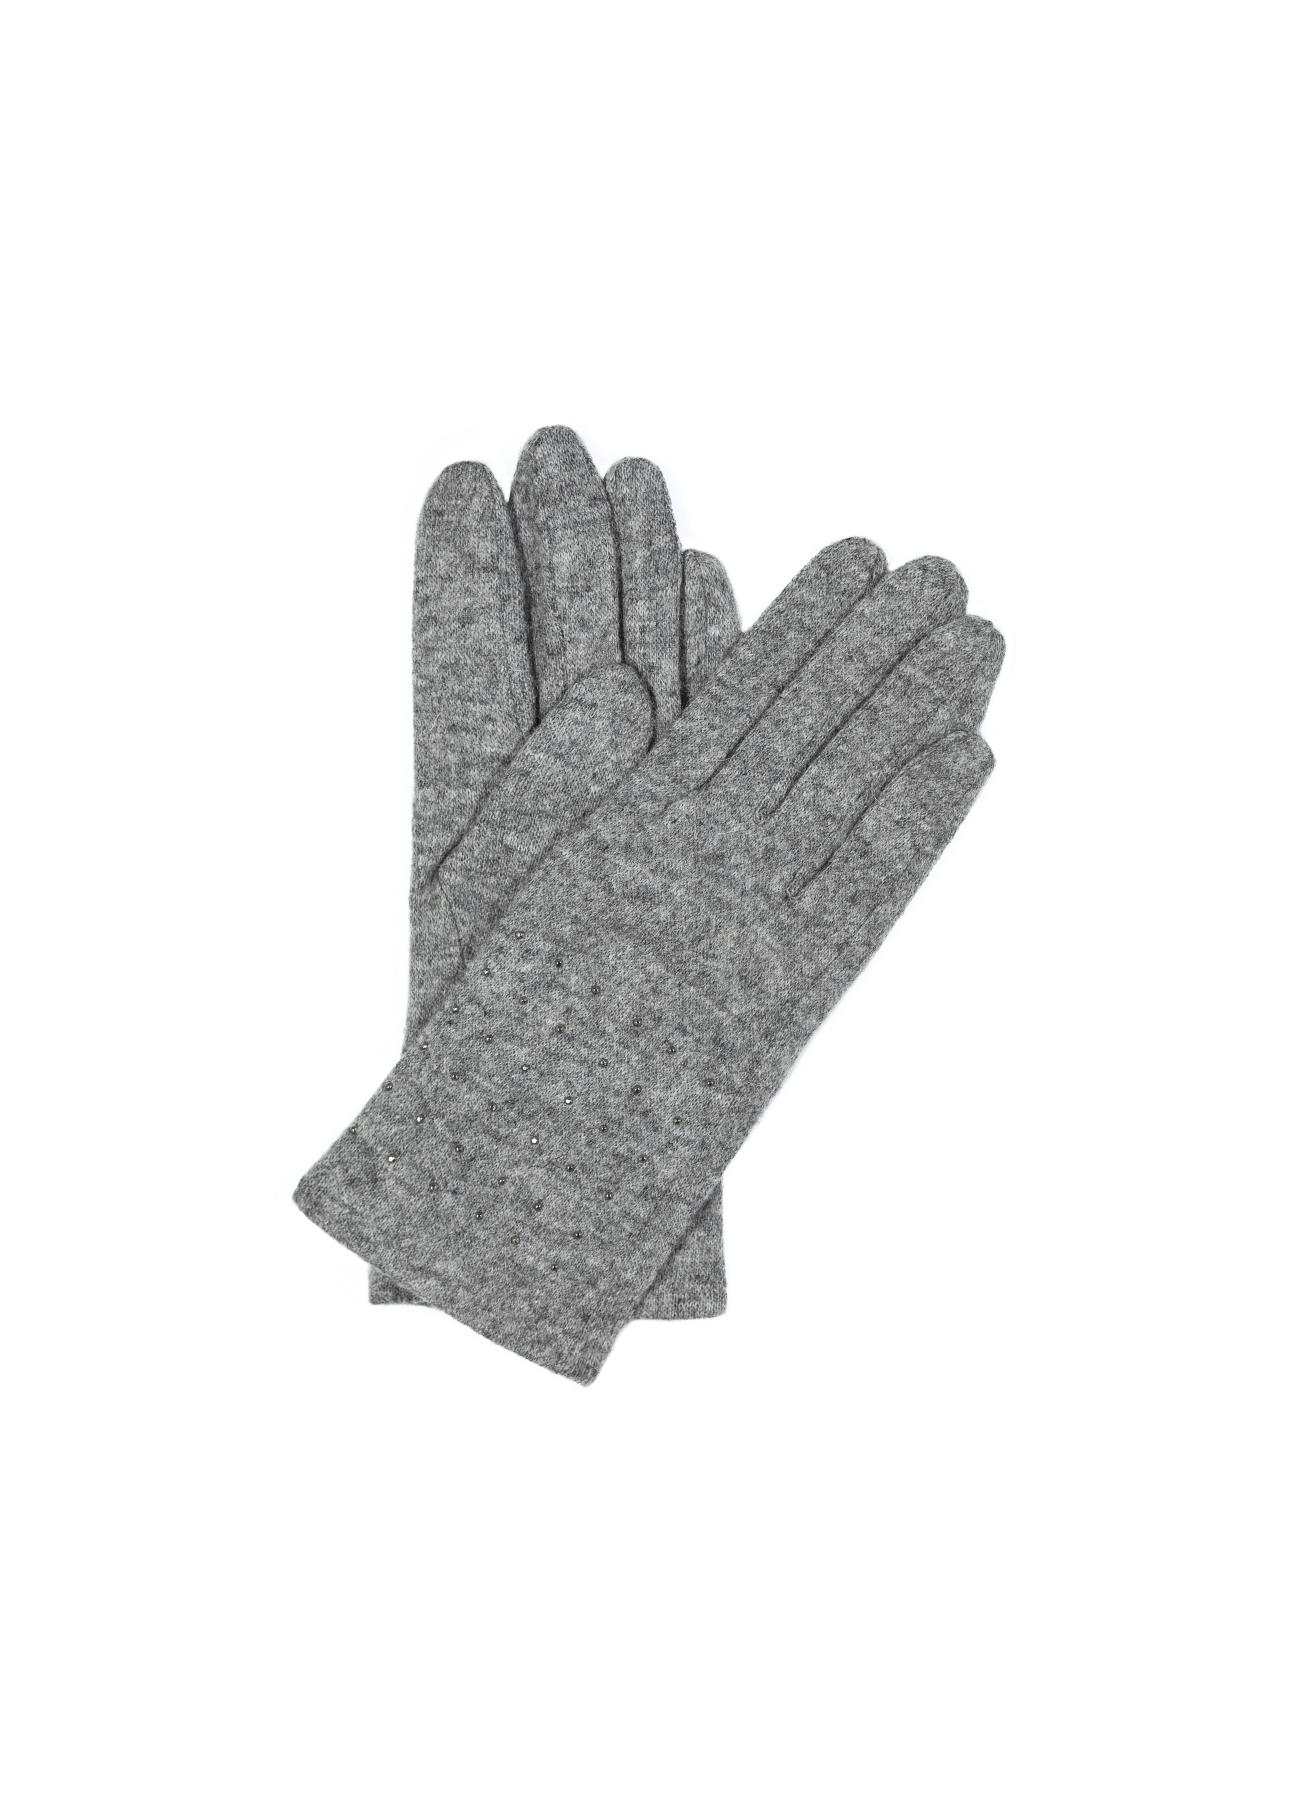 Rękawiczki damskie REKDT-0010-91(Z19)